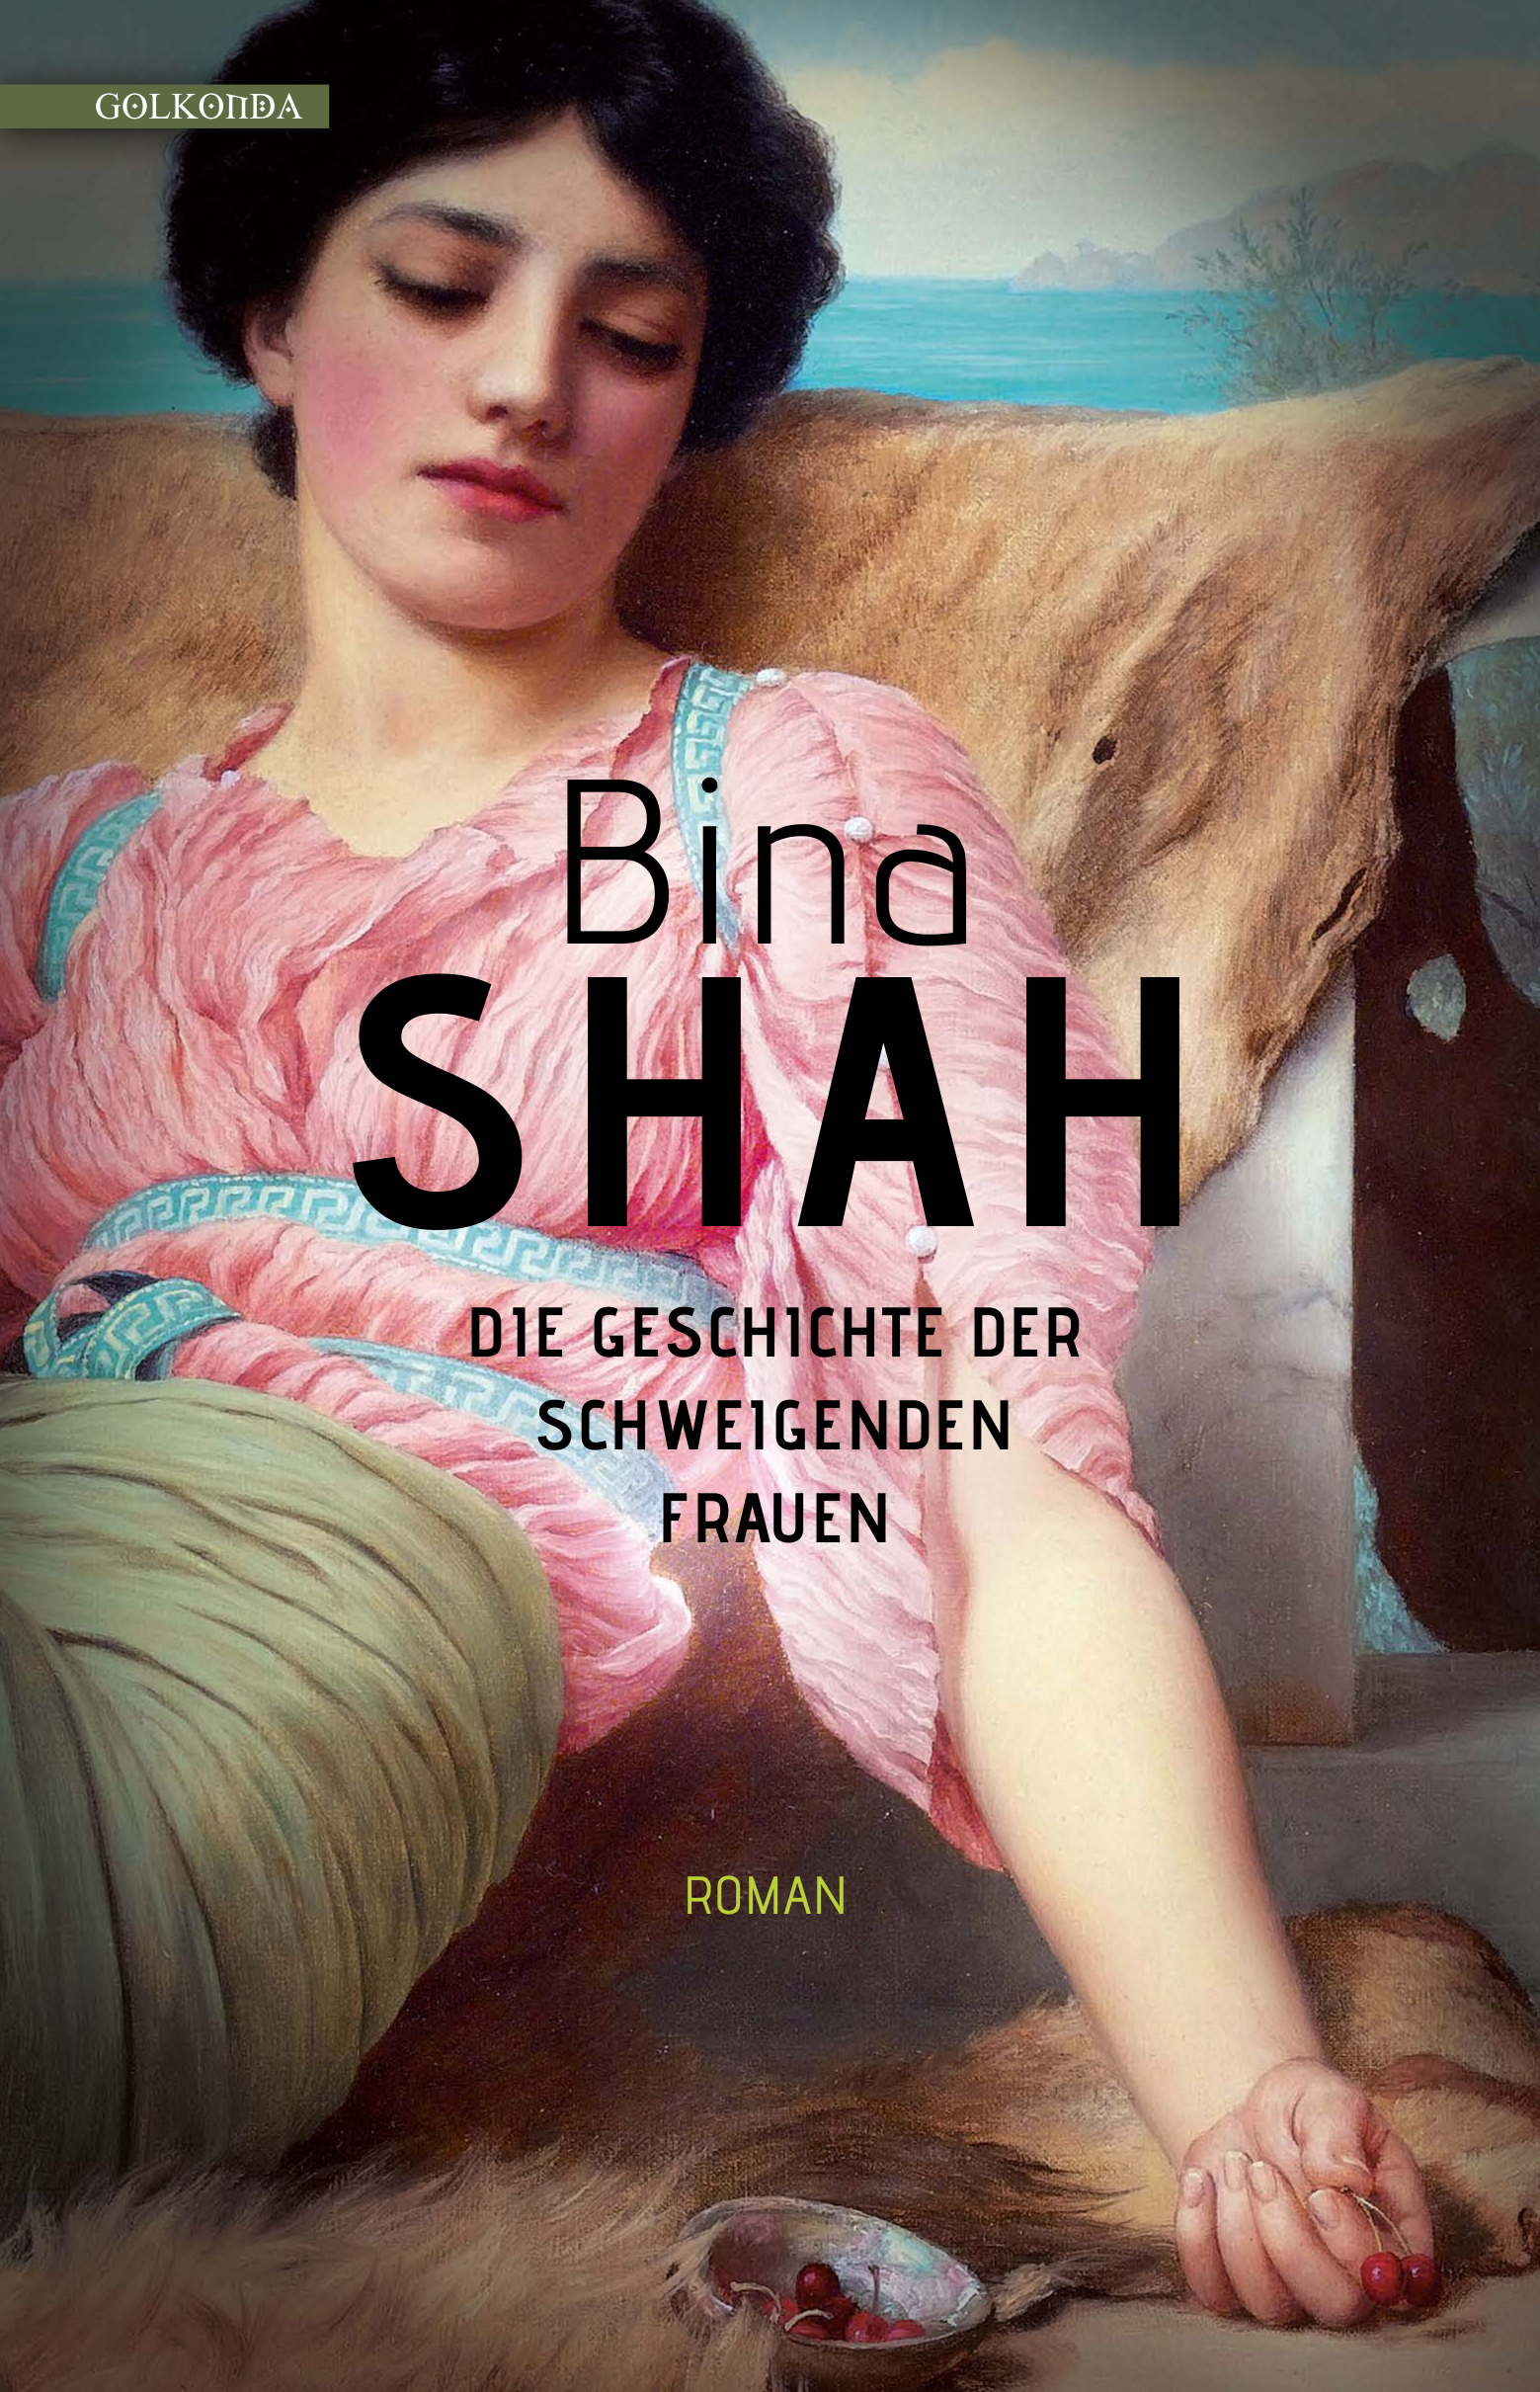 Buchcover Bina Shah: "Die Geschichte der schweigenden Frauen" im Golkonda-Verlag